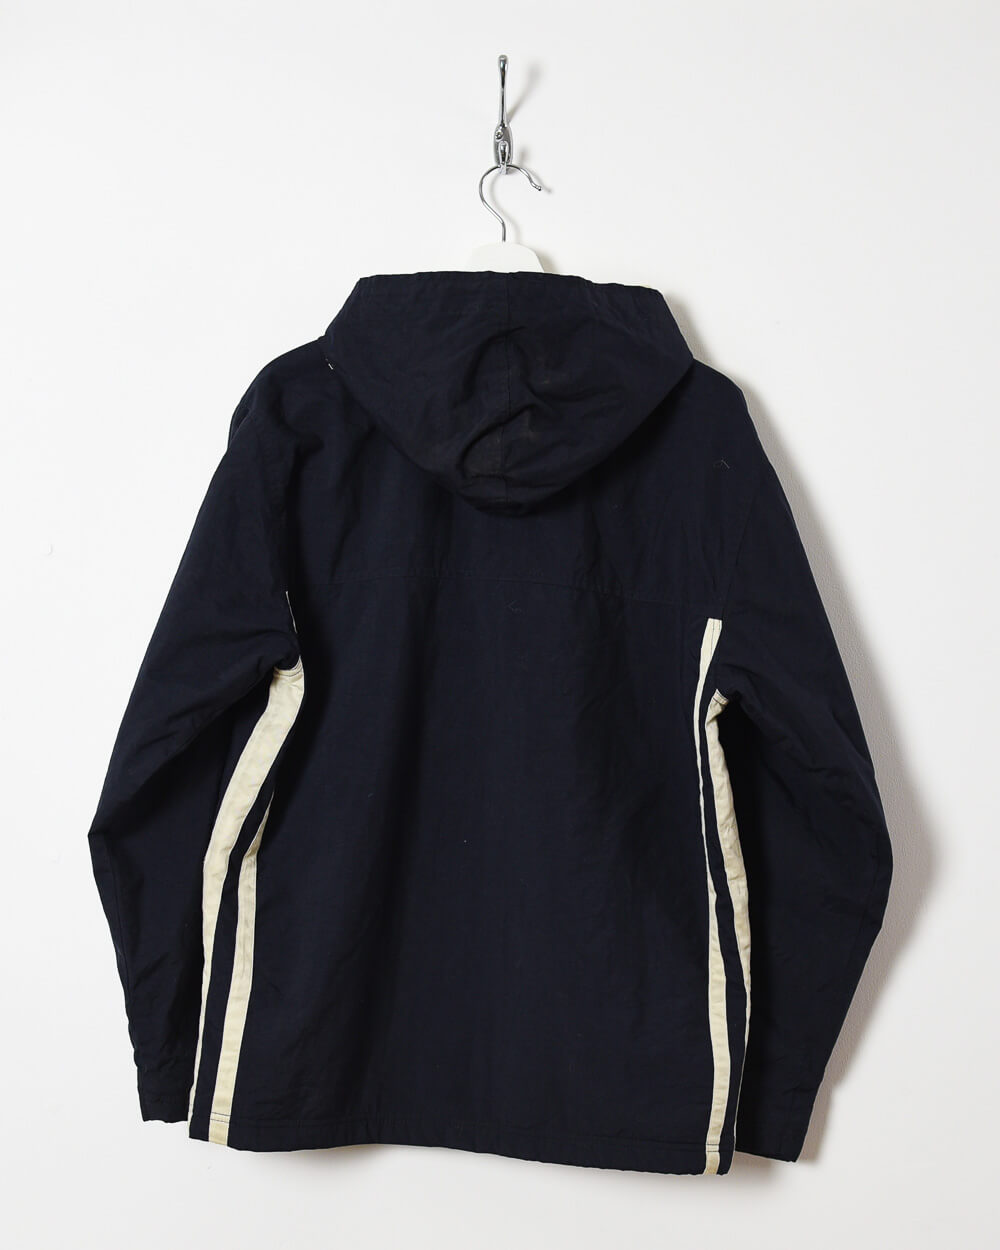 Black Nike Women's Hooded Fleece Lined Jacket - X-Large